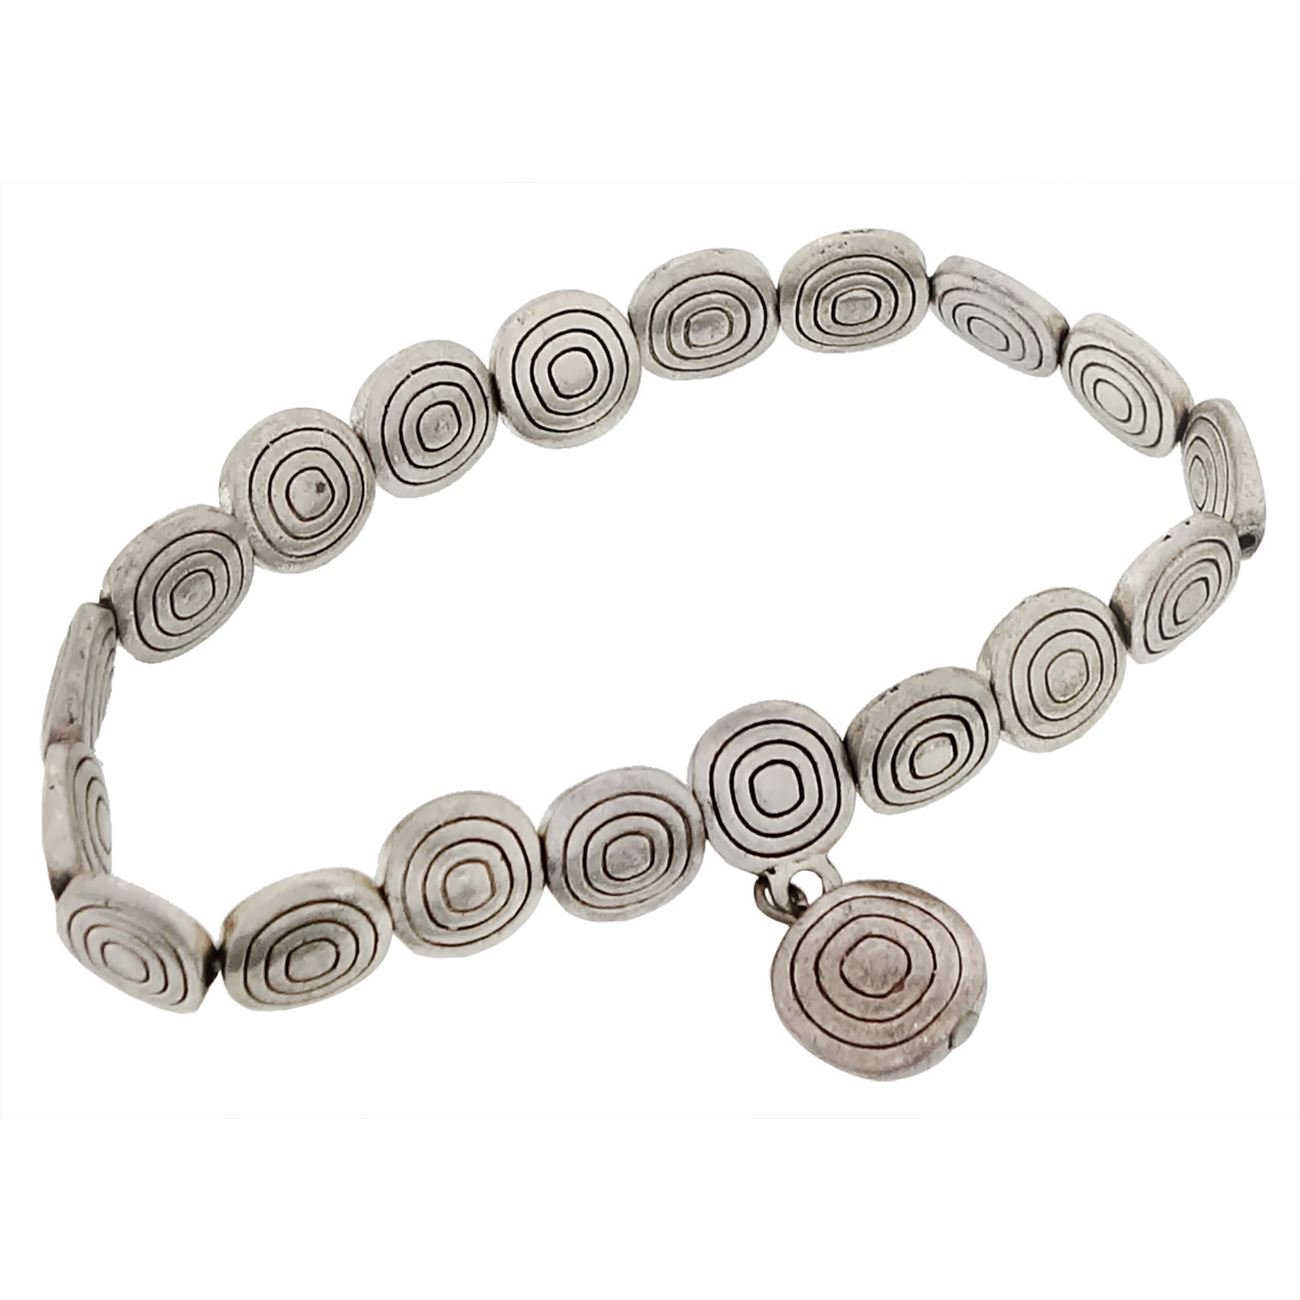 Silver Beads With Swirls Bracelet